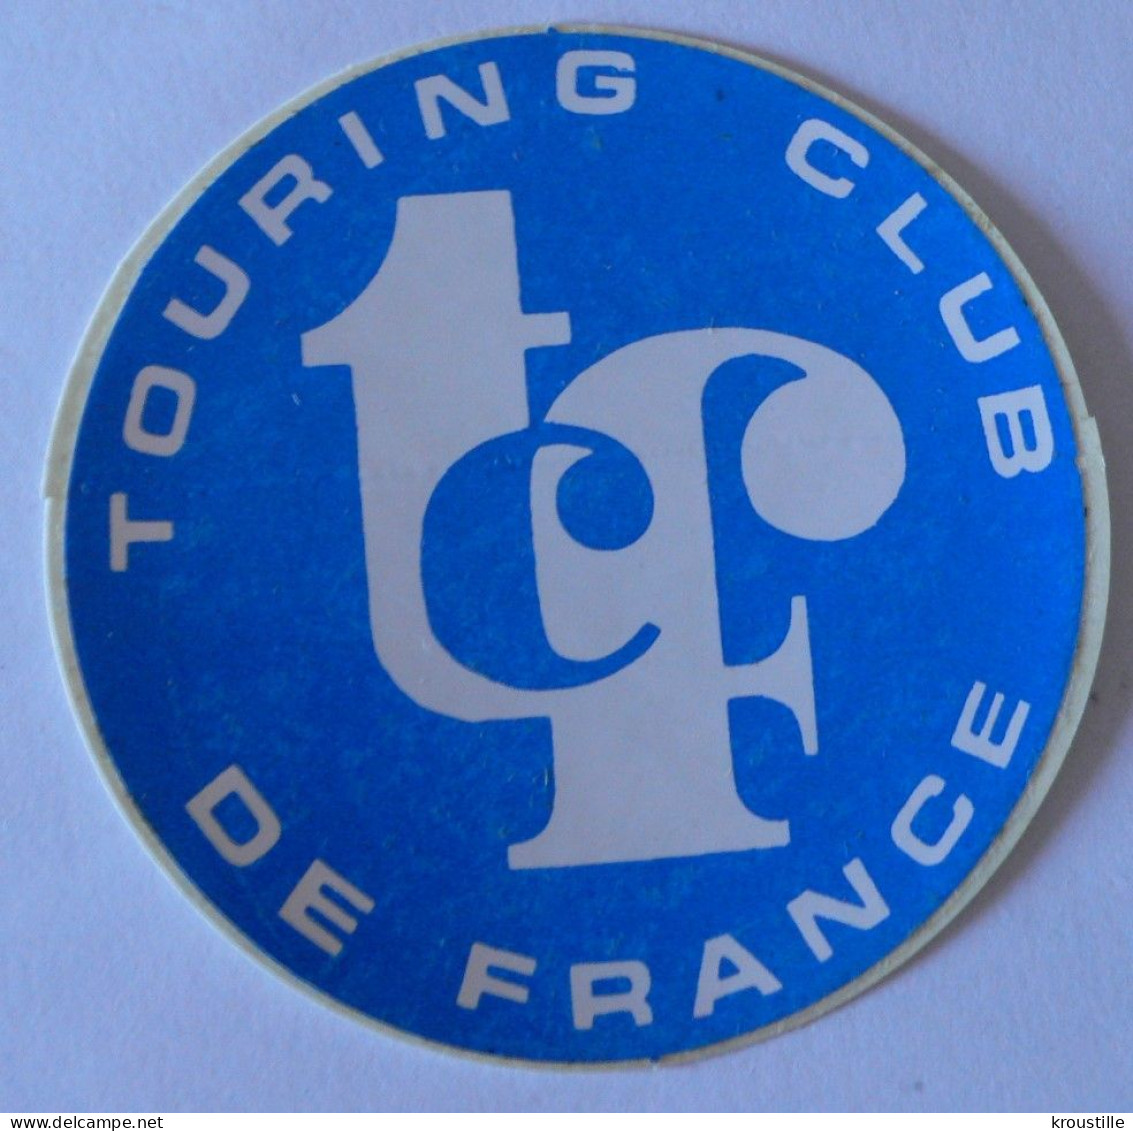 AUTOCOLLANT TOURING CLUB DE FRANCE - Autocollants